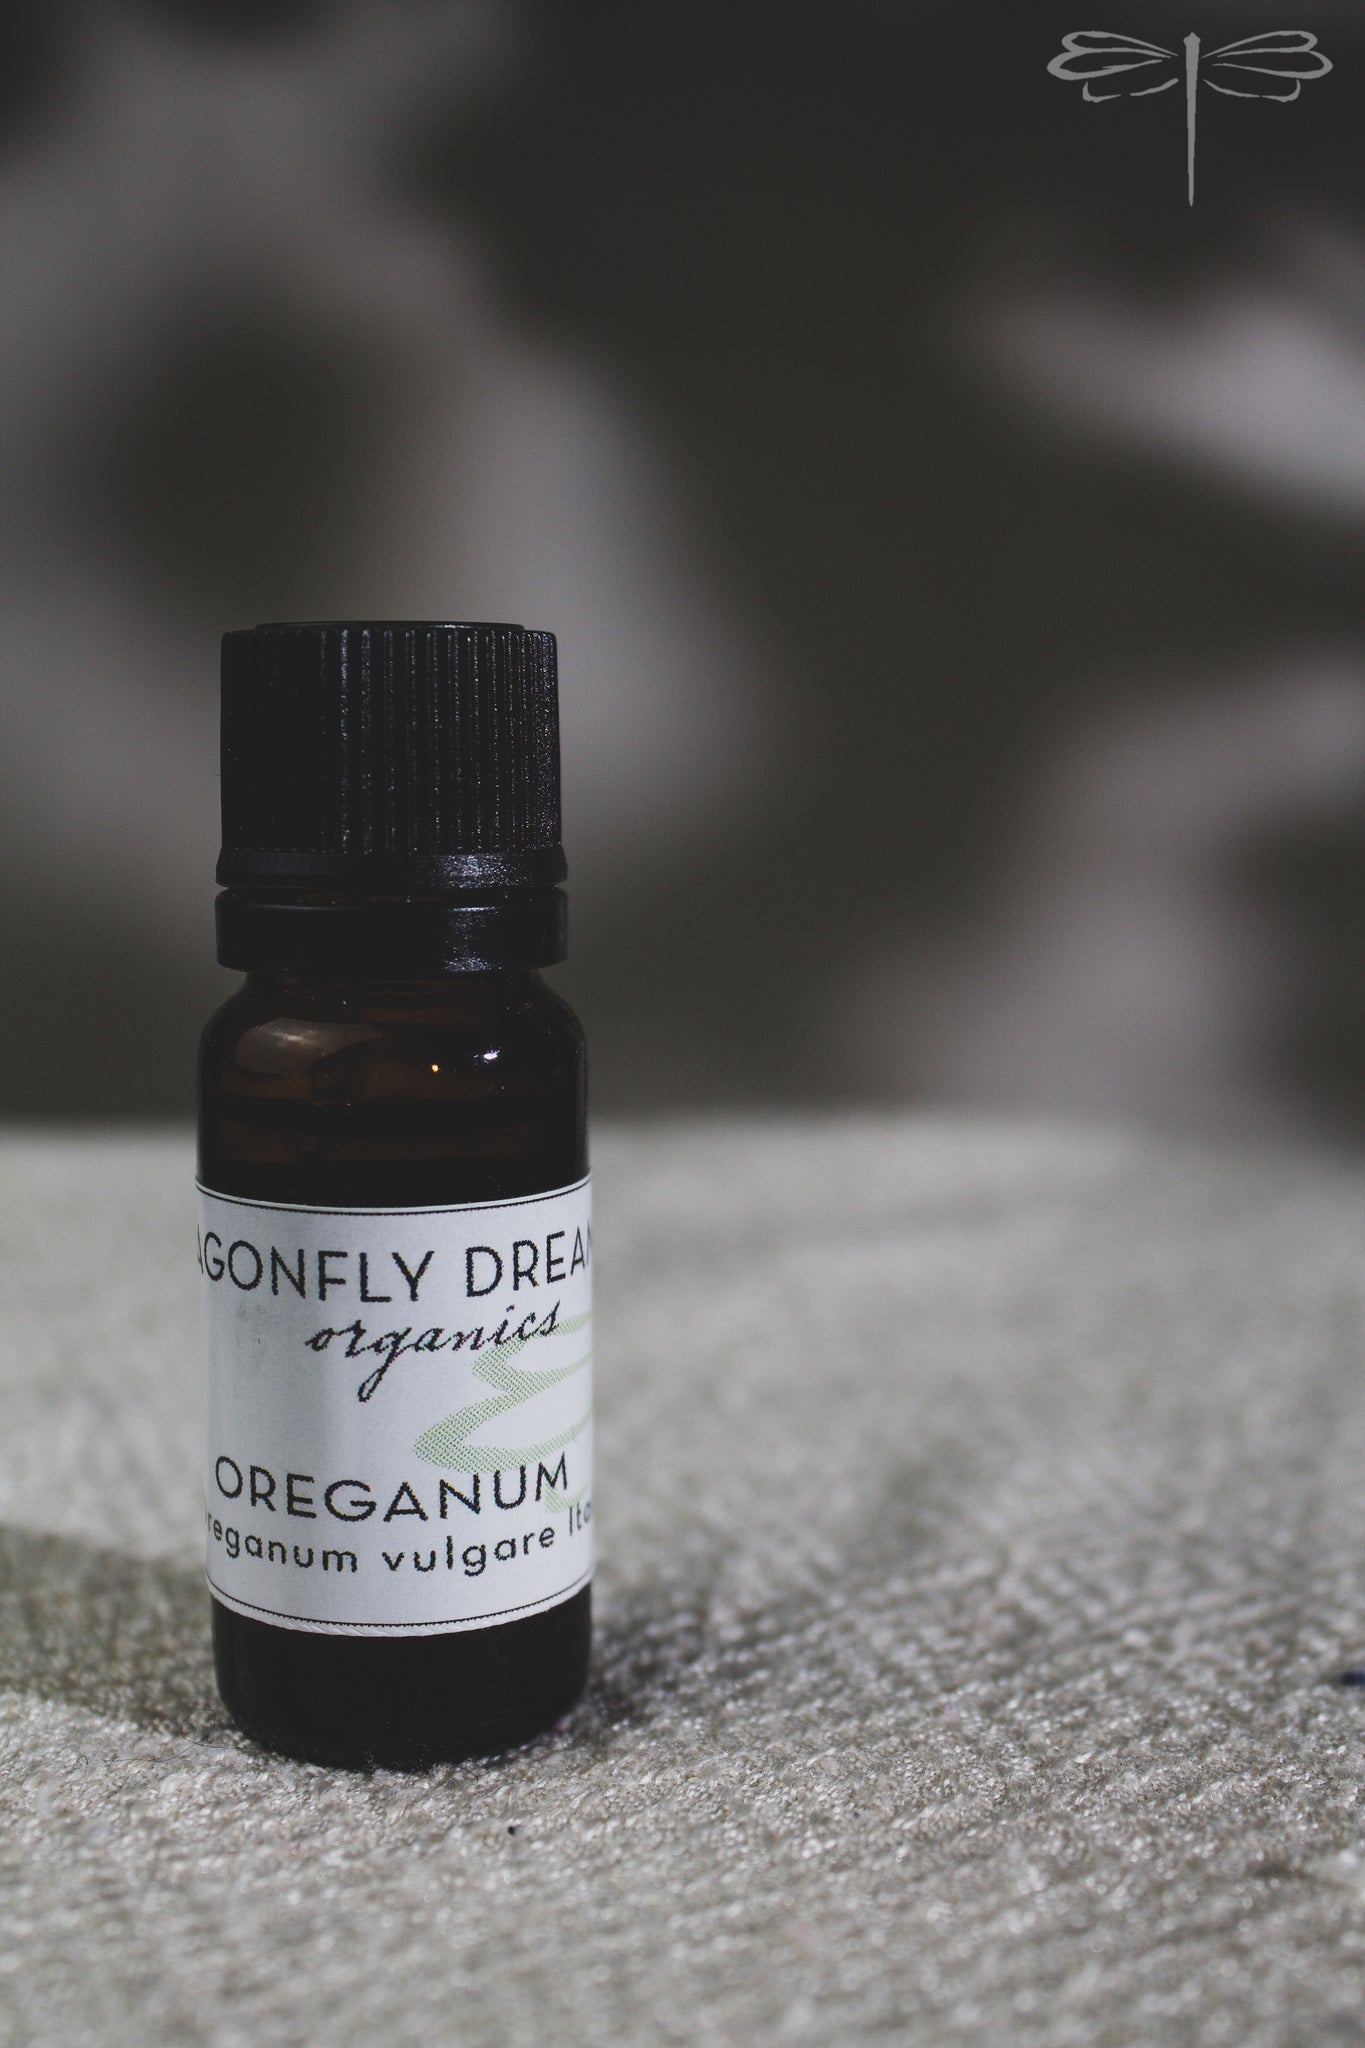 Oreganum essential oil by Dragonfly Dreaming Organics